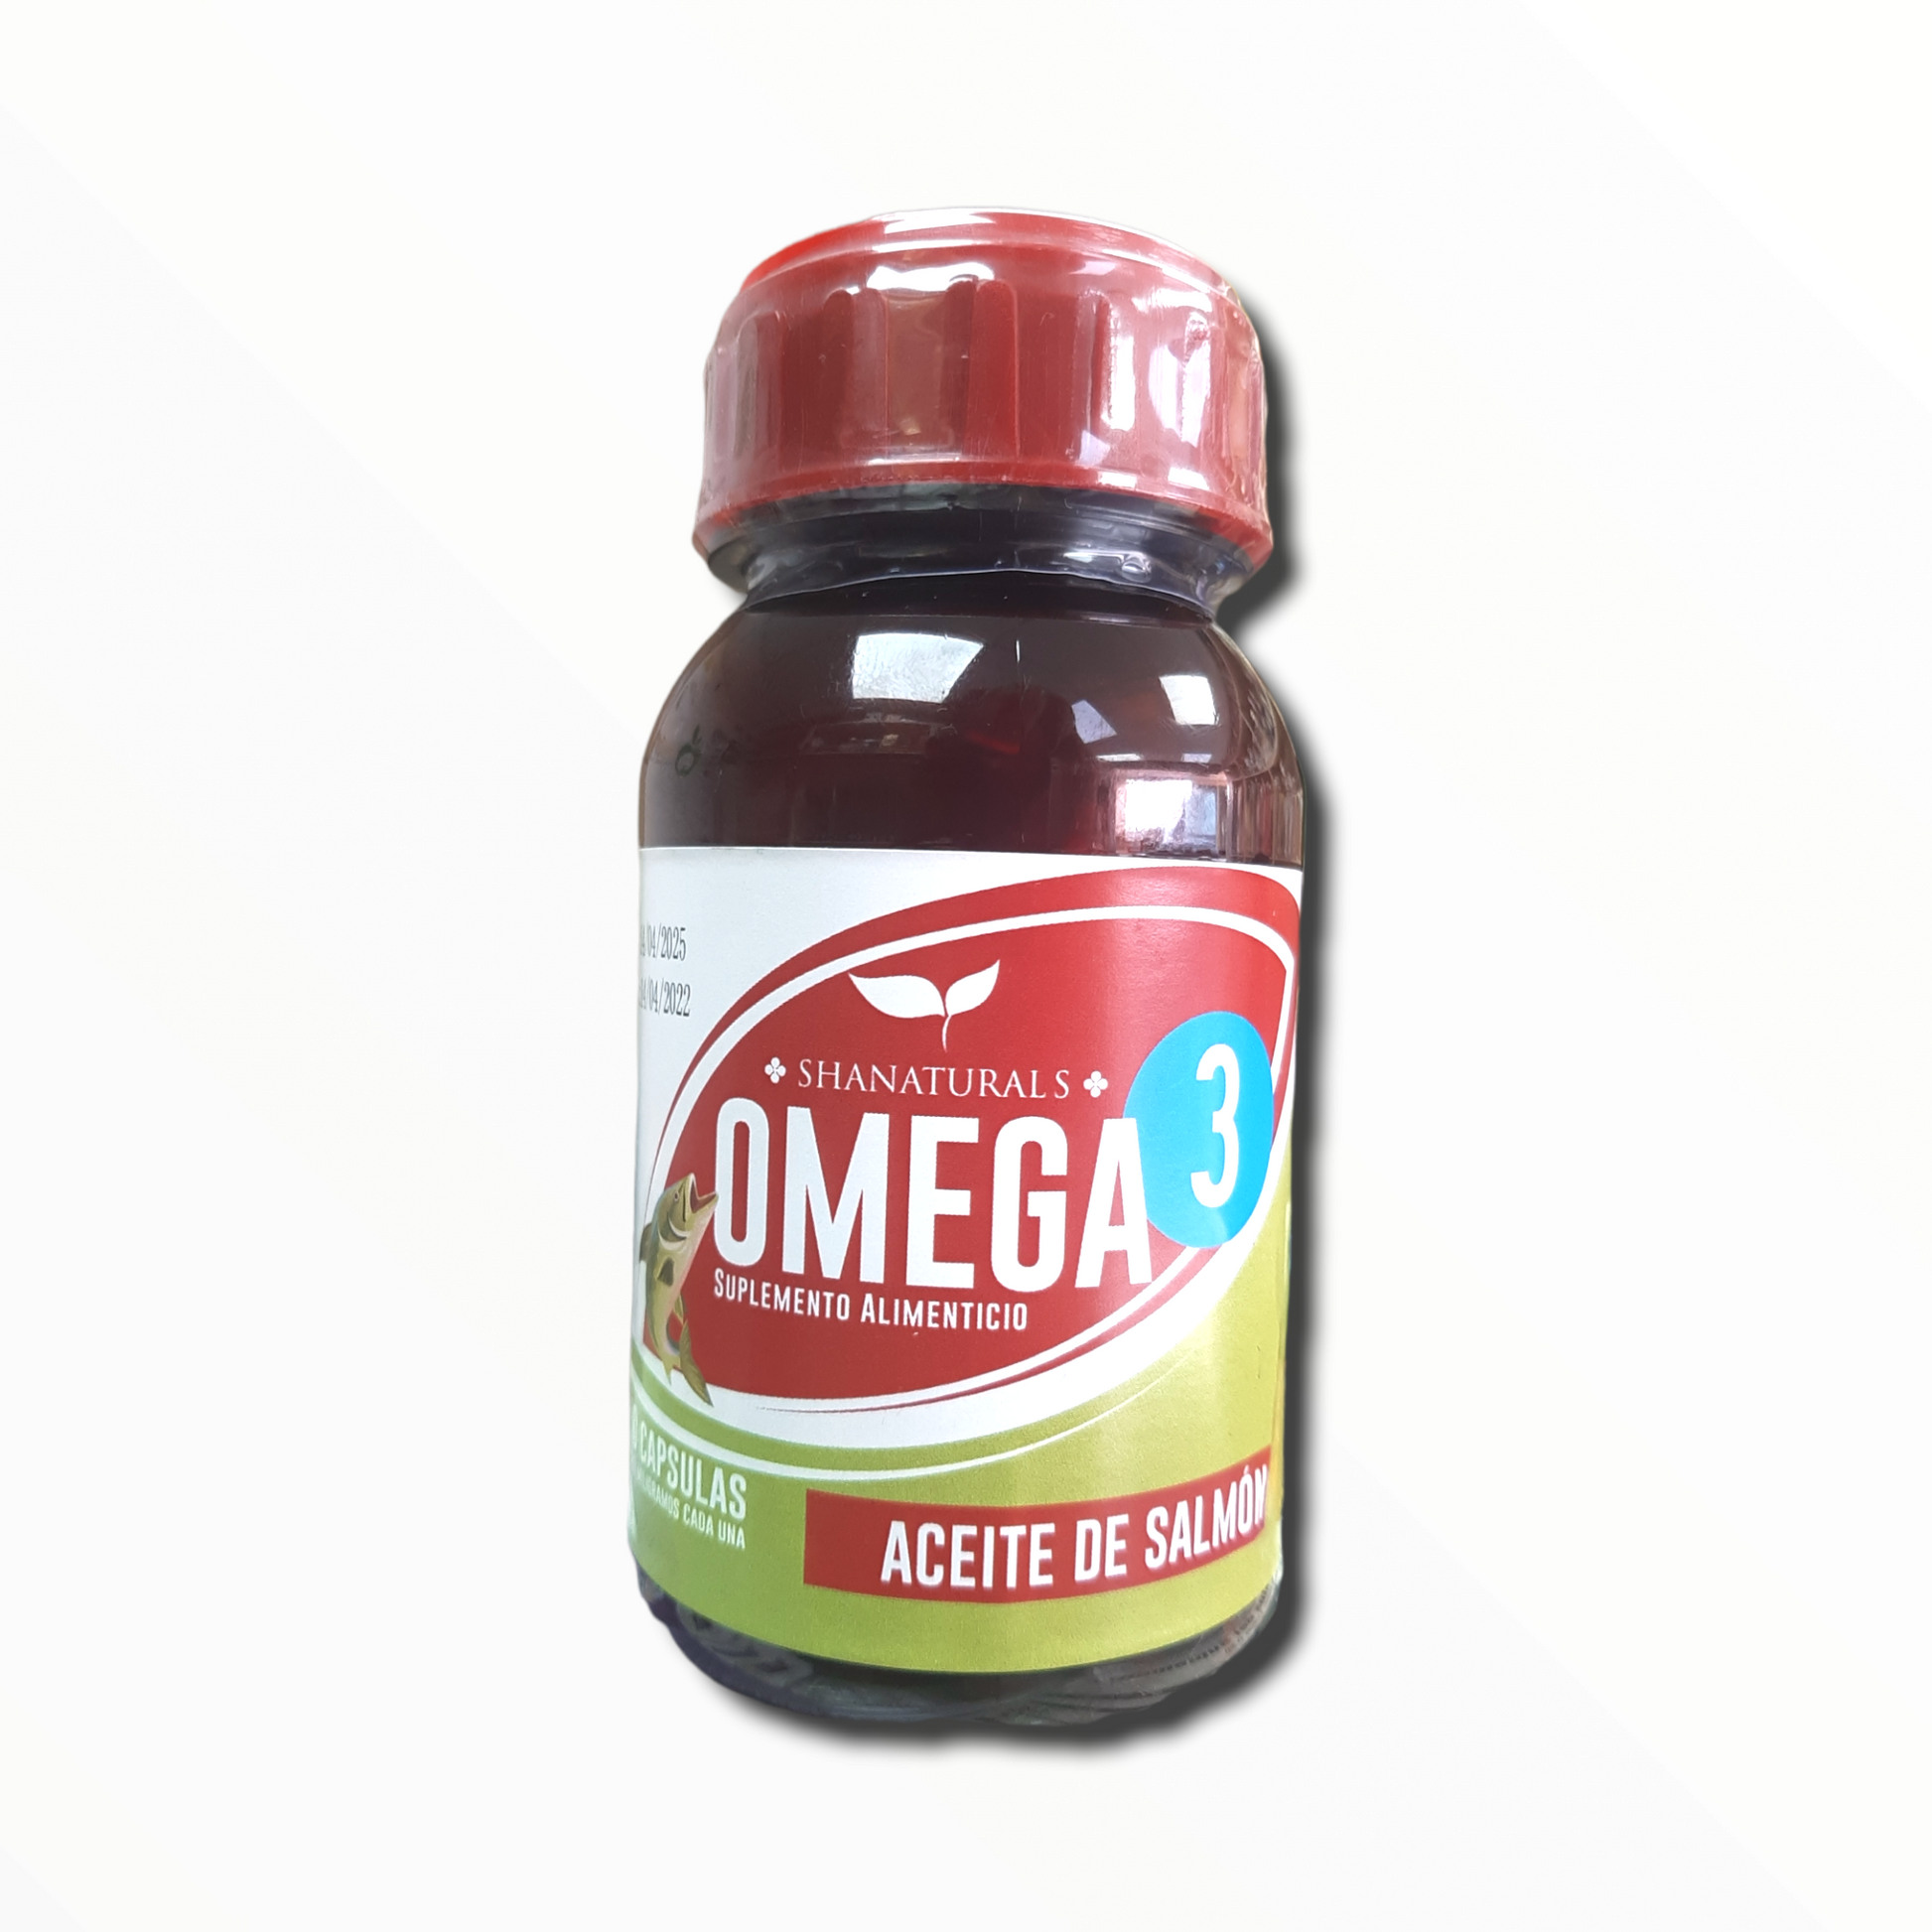 omega 3 aceite de salmón suplemento alimenticio 90 cápsulas 1000 mg